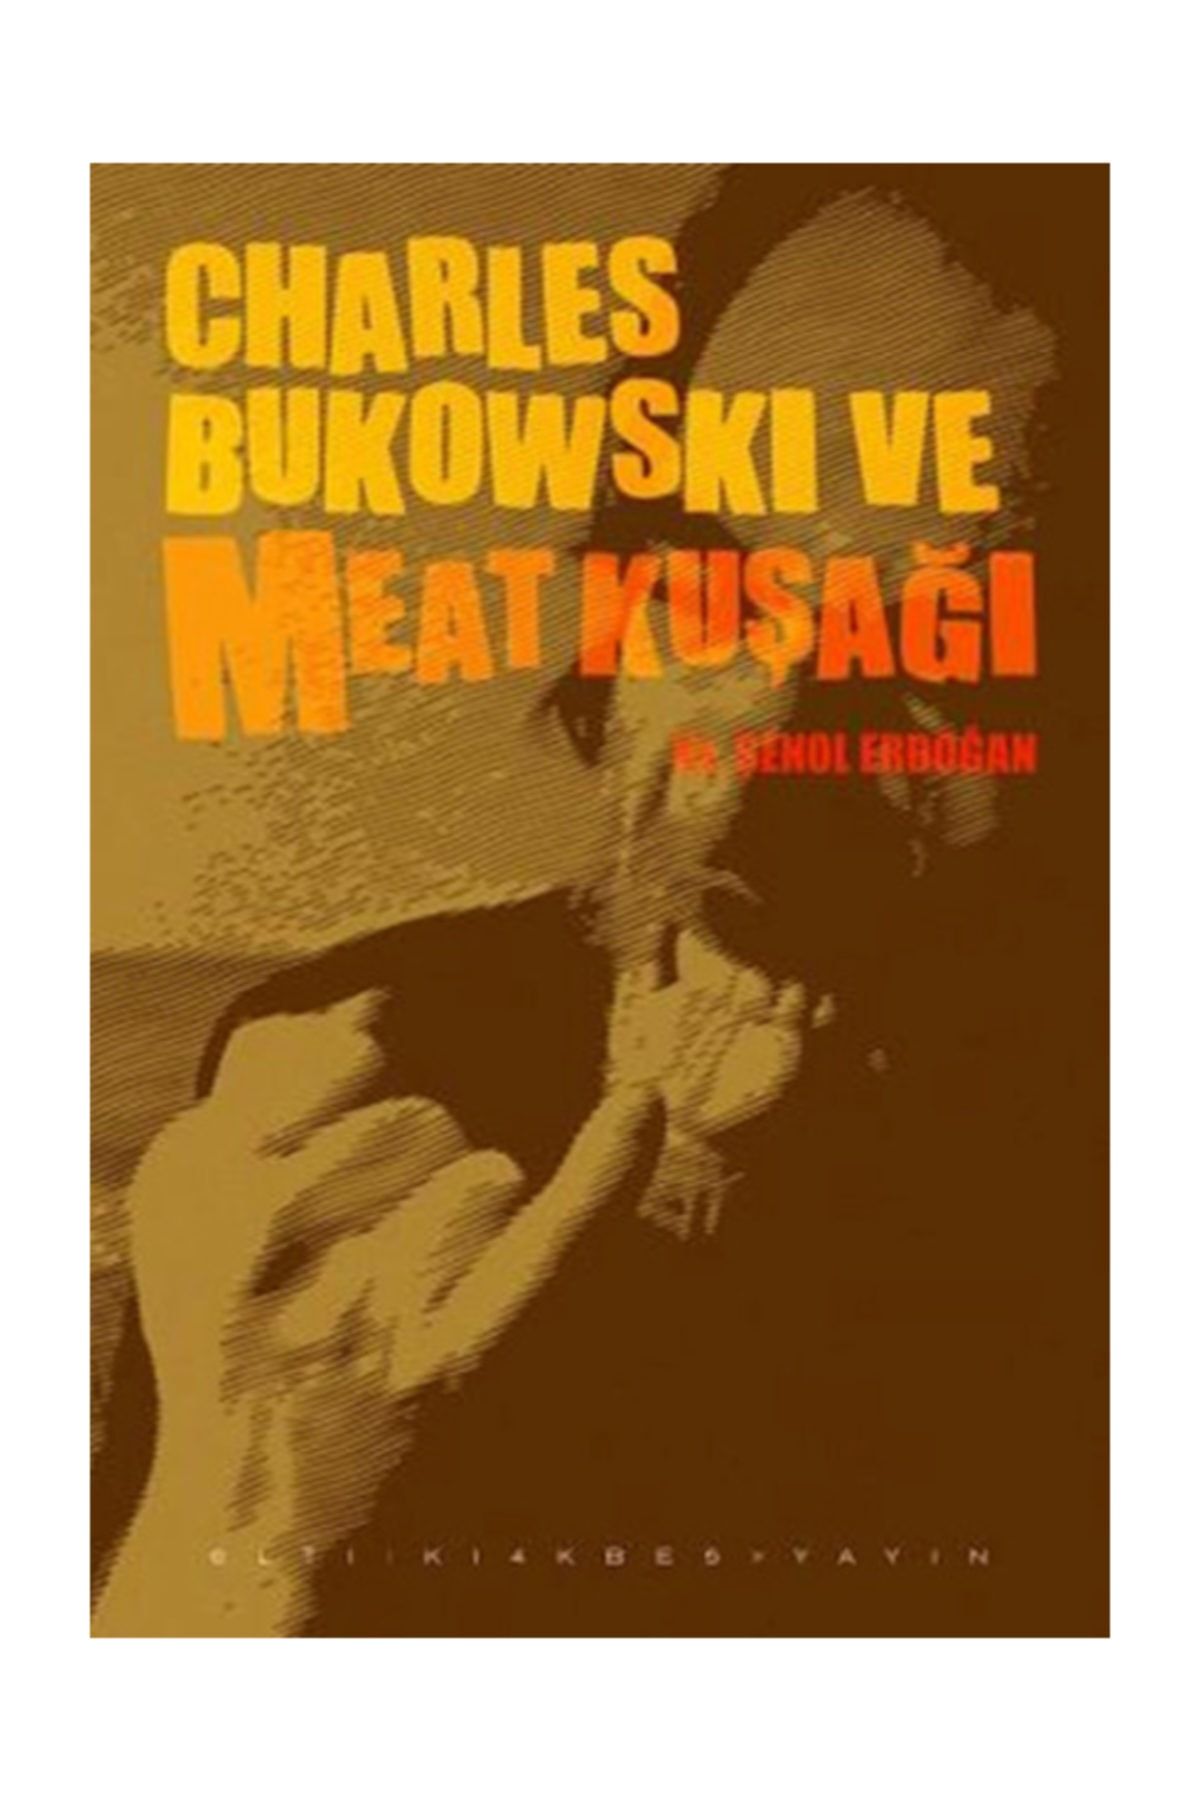 Altıkırkbeş Yayınları Charles Bukowski ve Meat Kuşağı